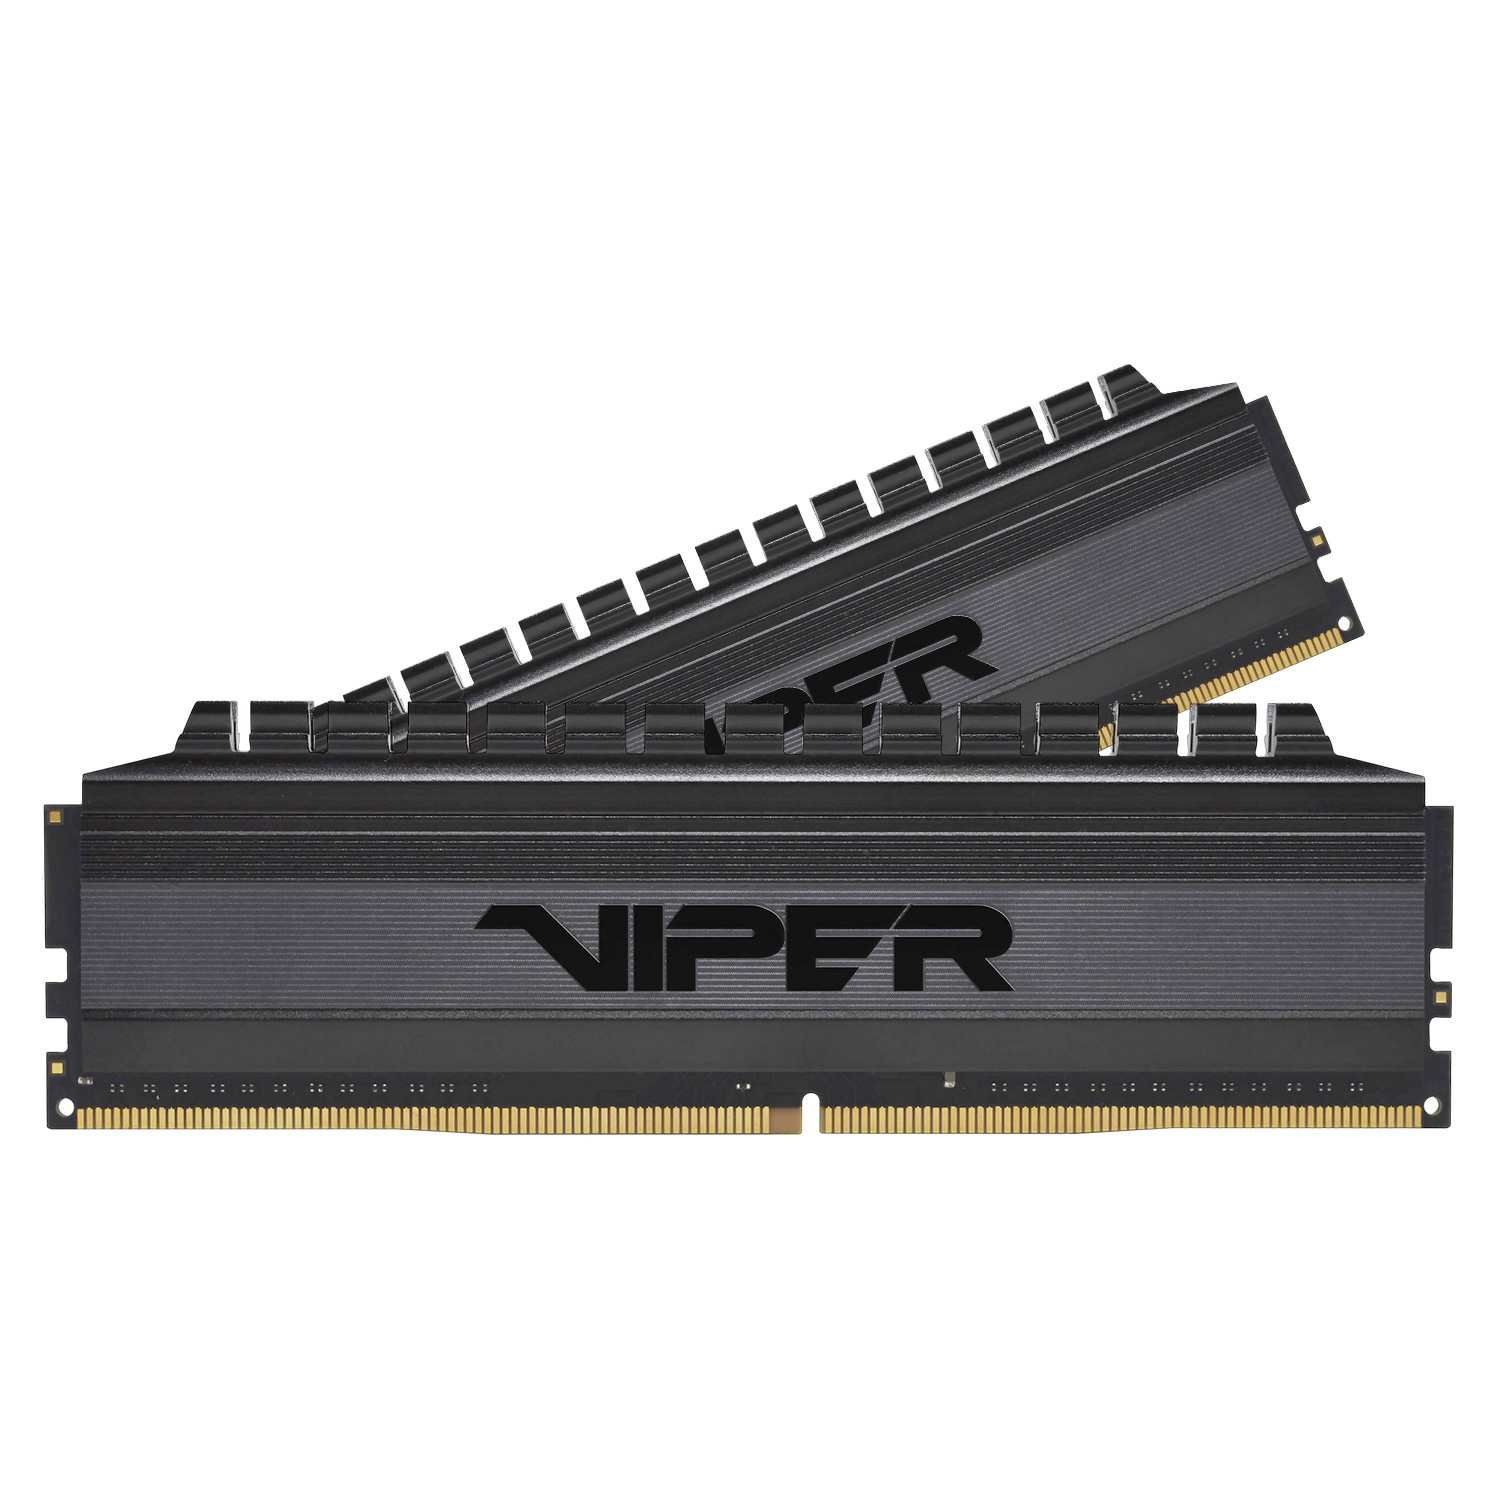 Memória RAM Patriot Viper 4 Blackout  / 2x4GB / DDR4 / 3200MHz - (PVB48G320C6K)
